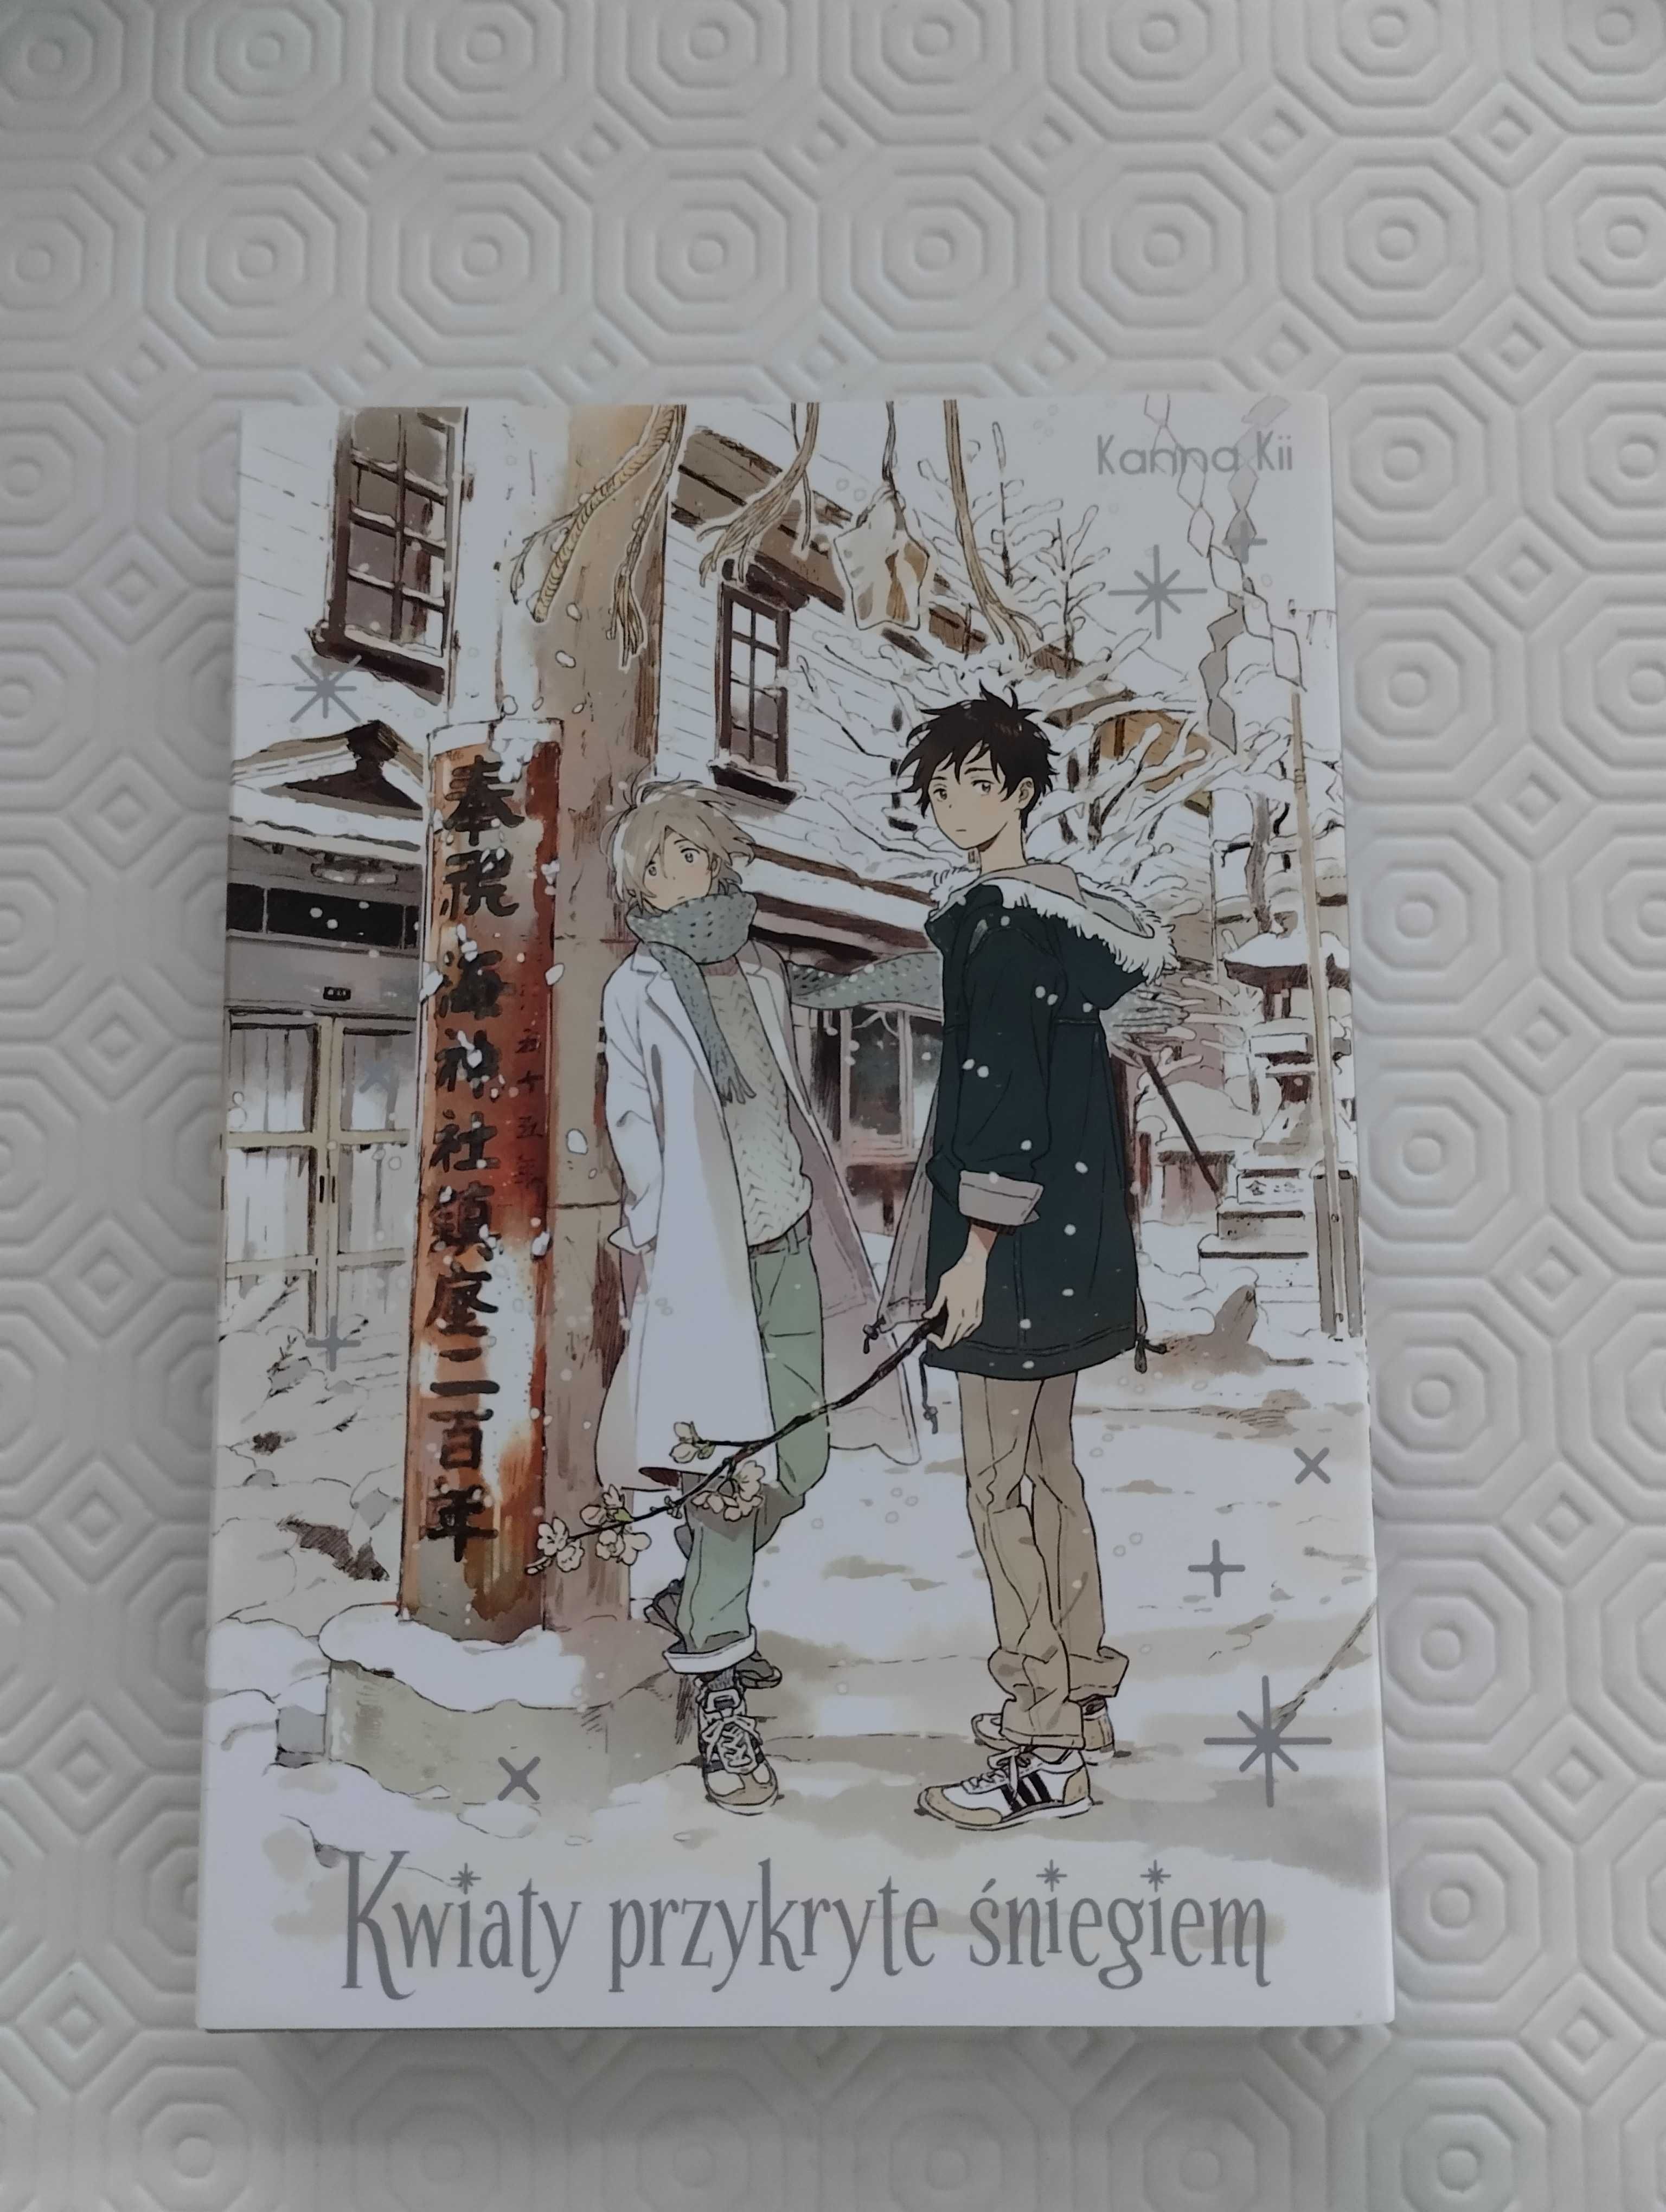 Manga: "Kwiaty przykryte śniegiem"